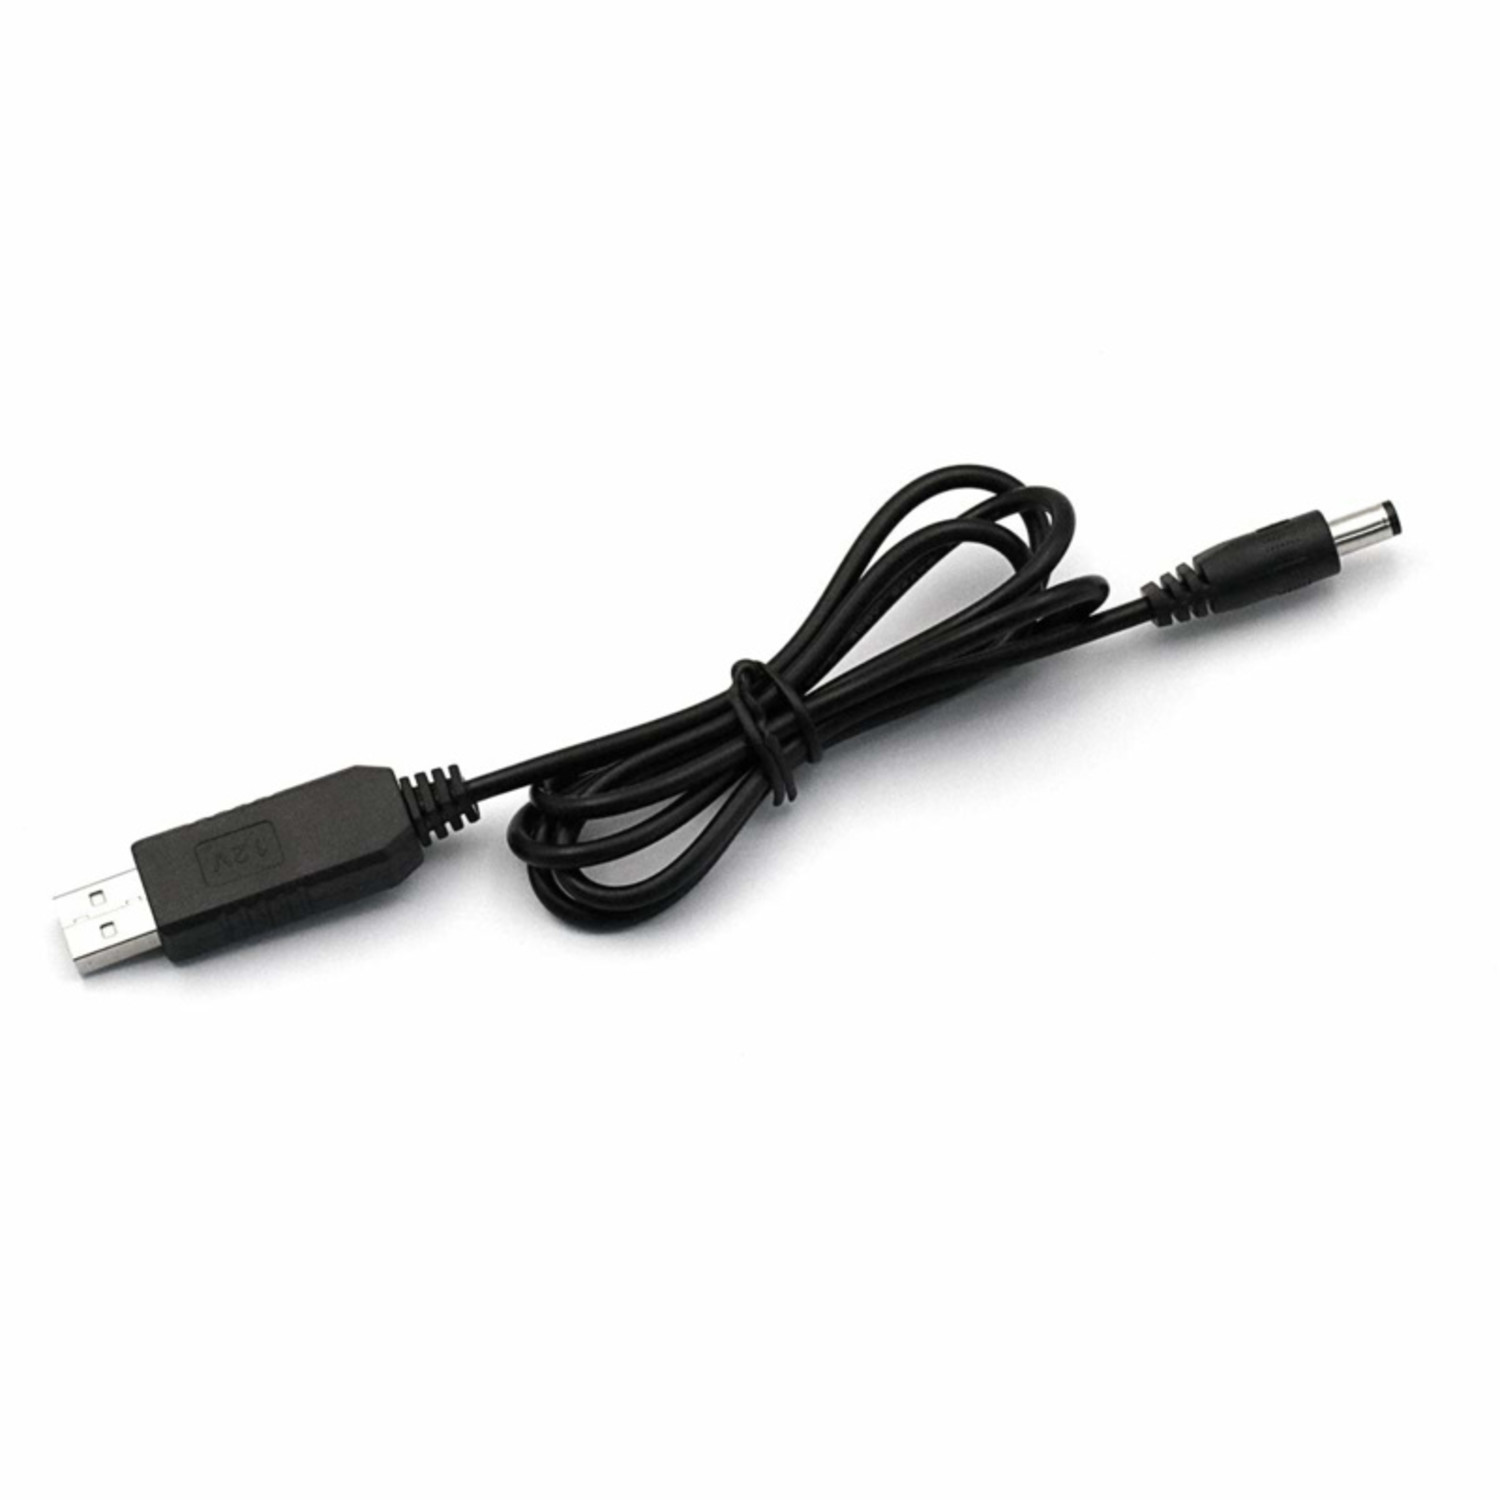 USB Step Up kabel van 5V naar 12V - Otronic